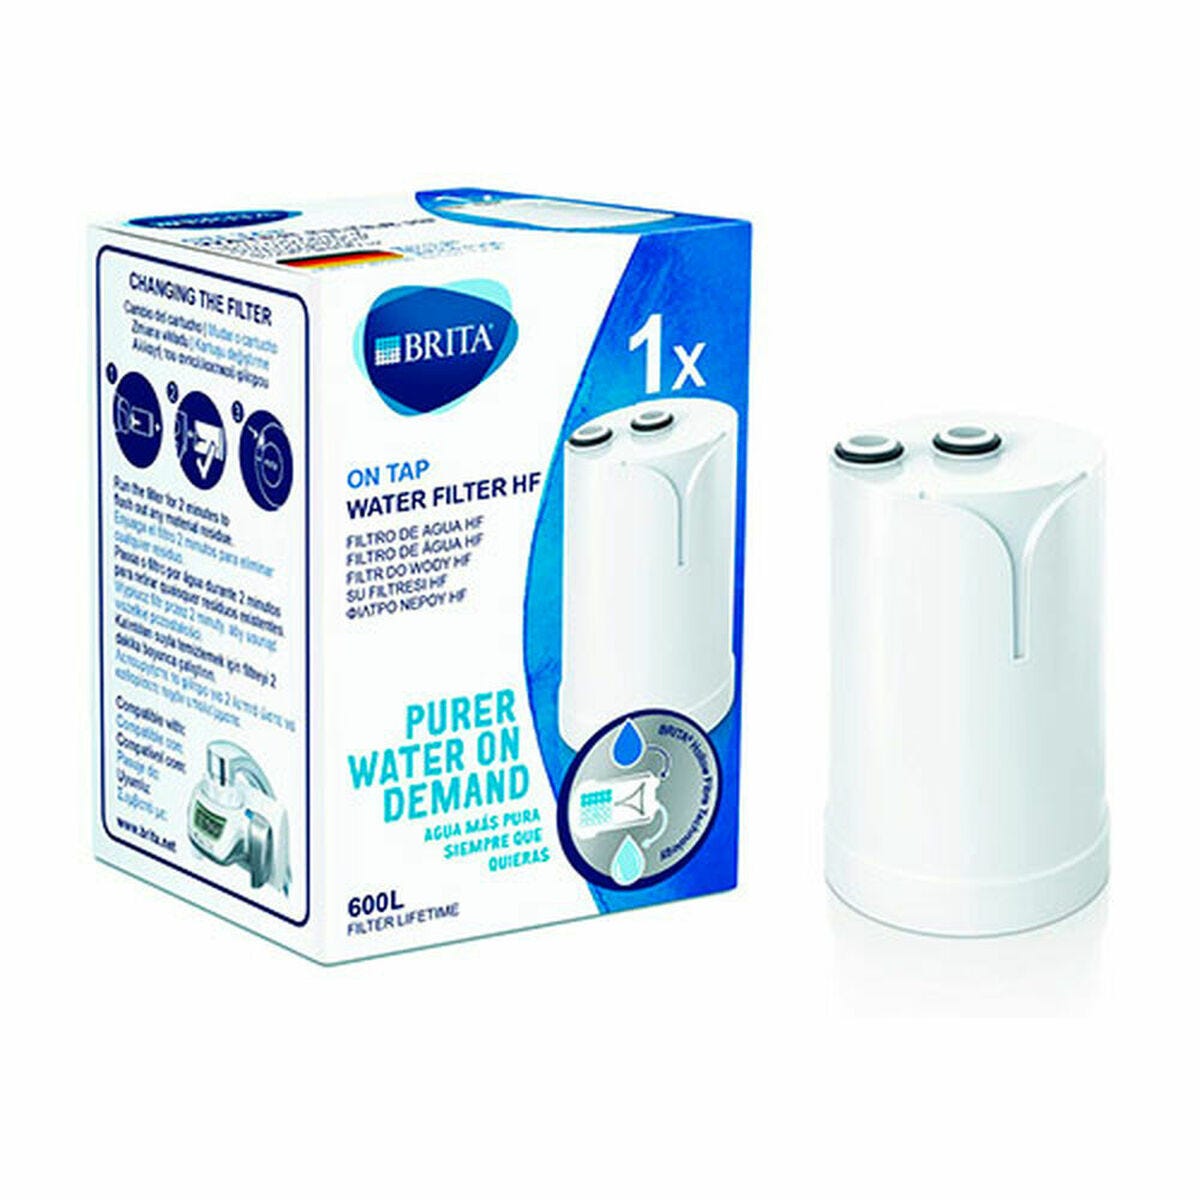 Filtro agua grifo on tap blanco 229100 Brita > menaje y hogar > cocina >  jarras filtrantes y accesorios